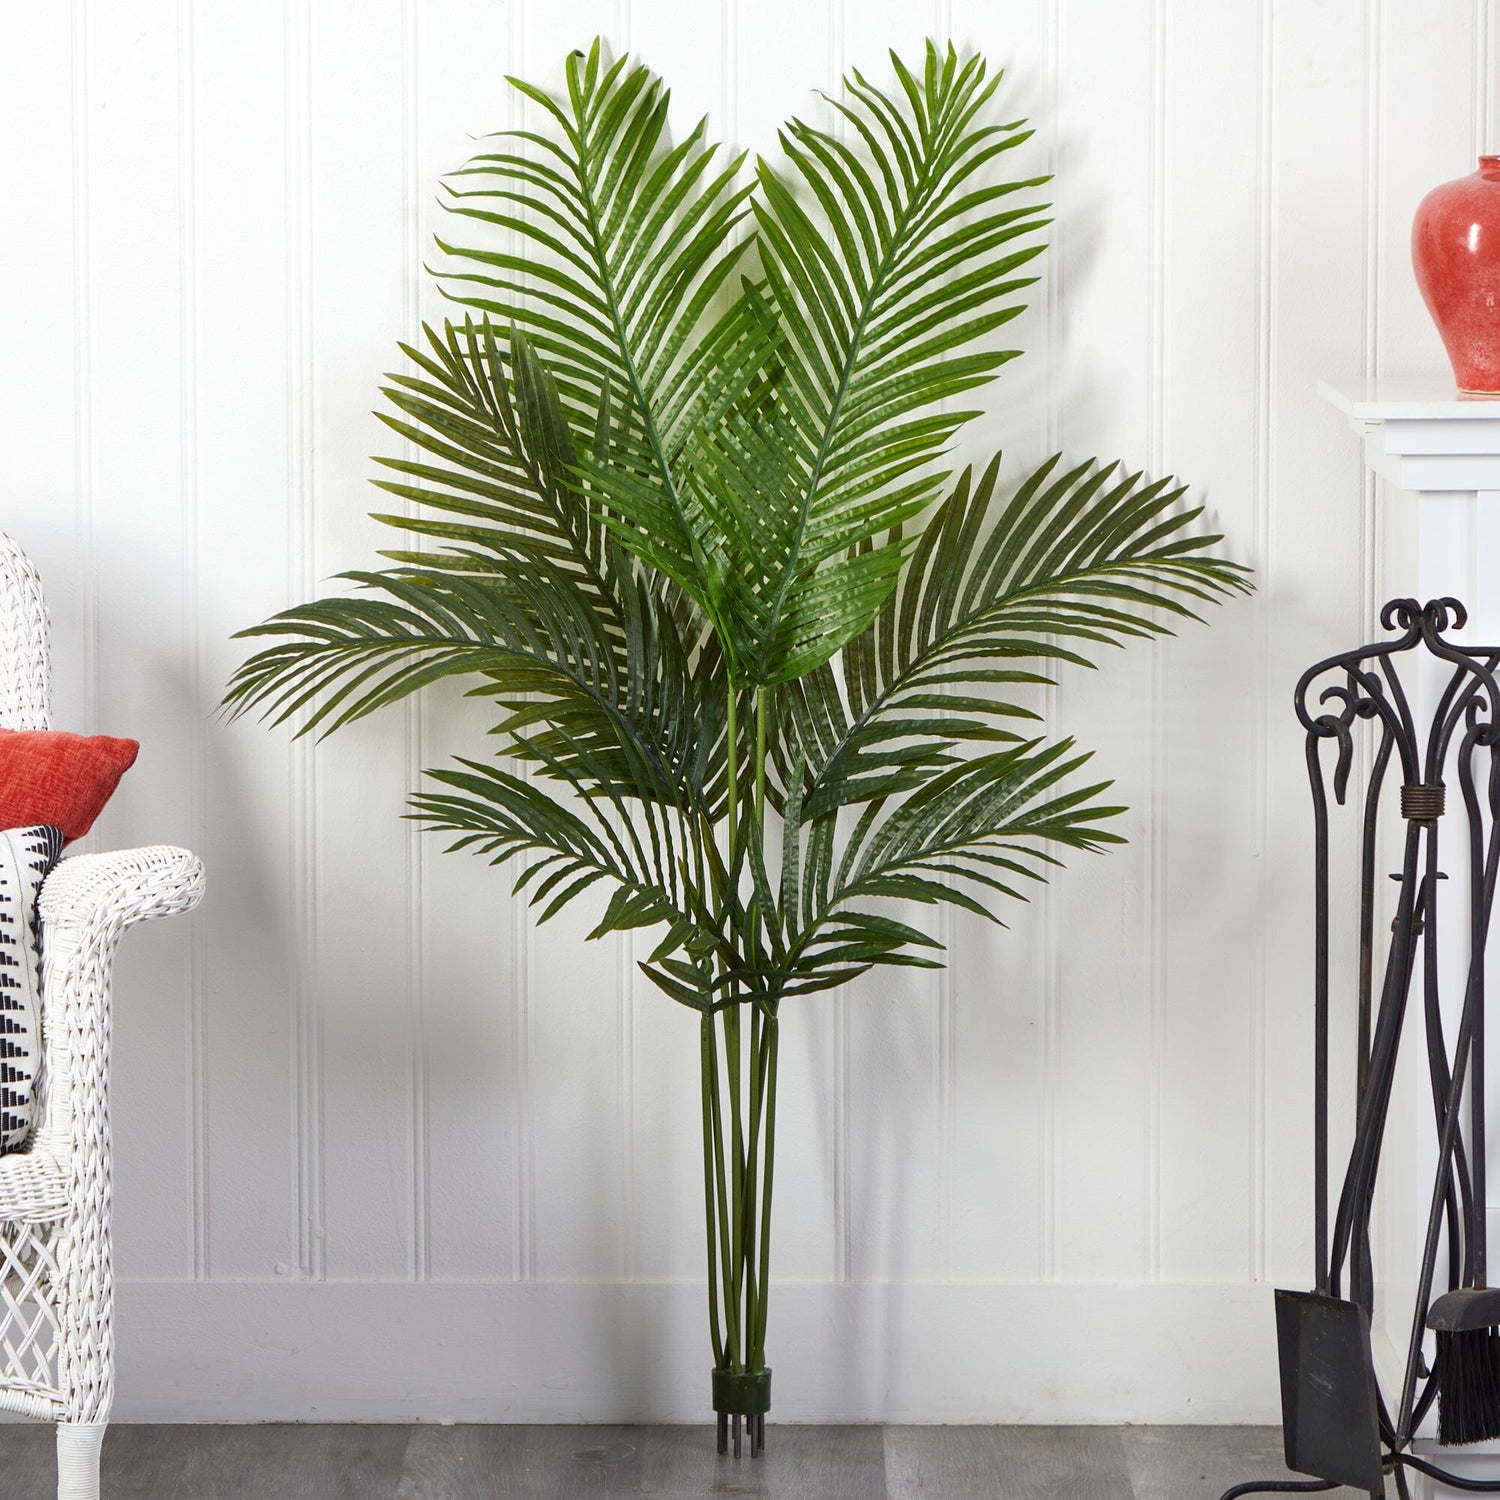 4’ Artificial Paradise Palm Tree (No Pot)